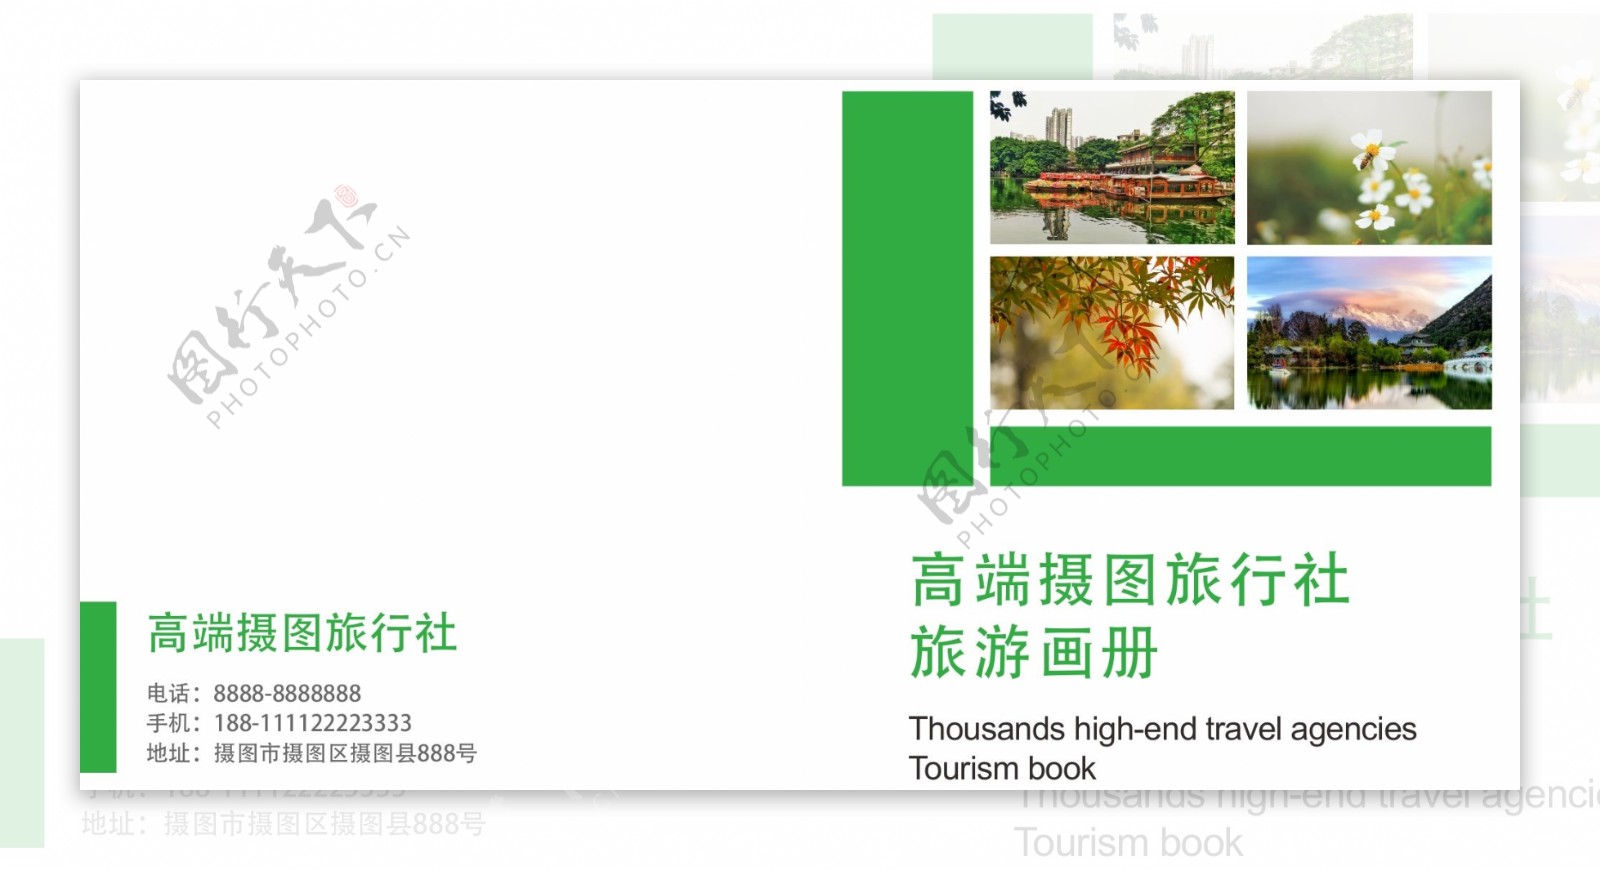 植物旅游宣传画册整套